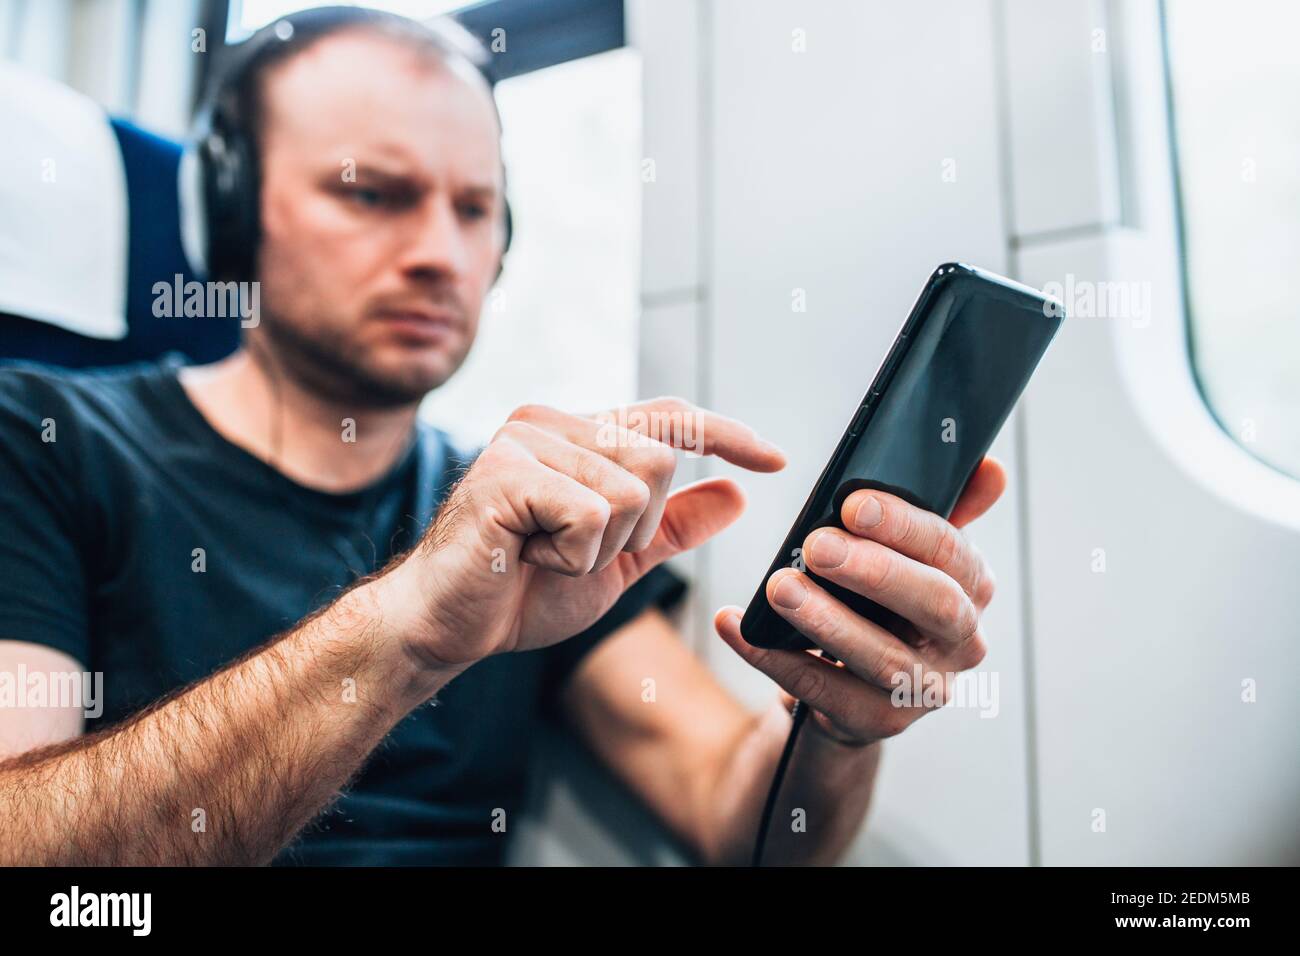 Persönliches Gadget in der Hand eines Mannes, der vorbei reist Train - Online-Kino und Musik - ein E-Book lesen Stockfoto